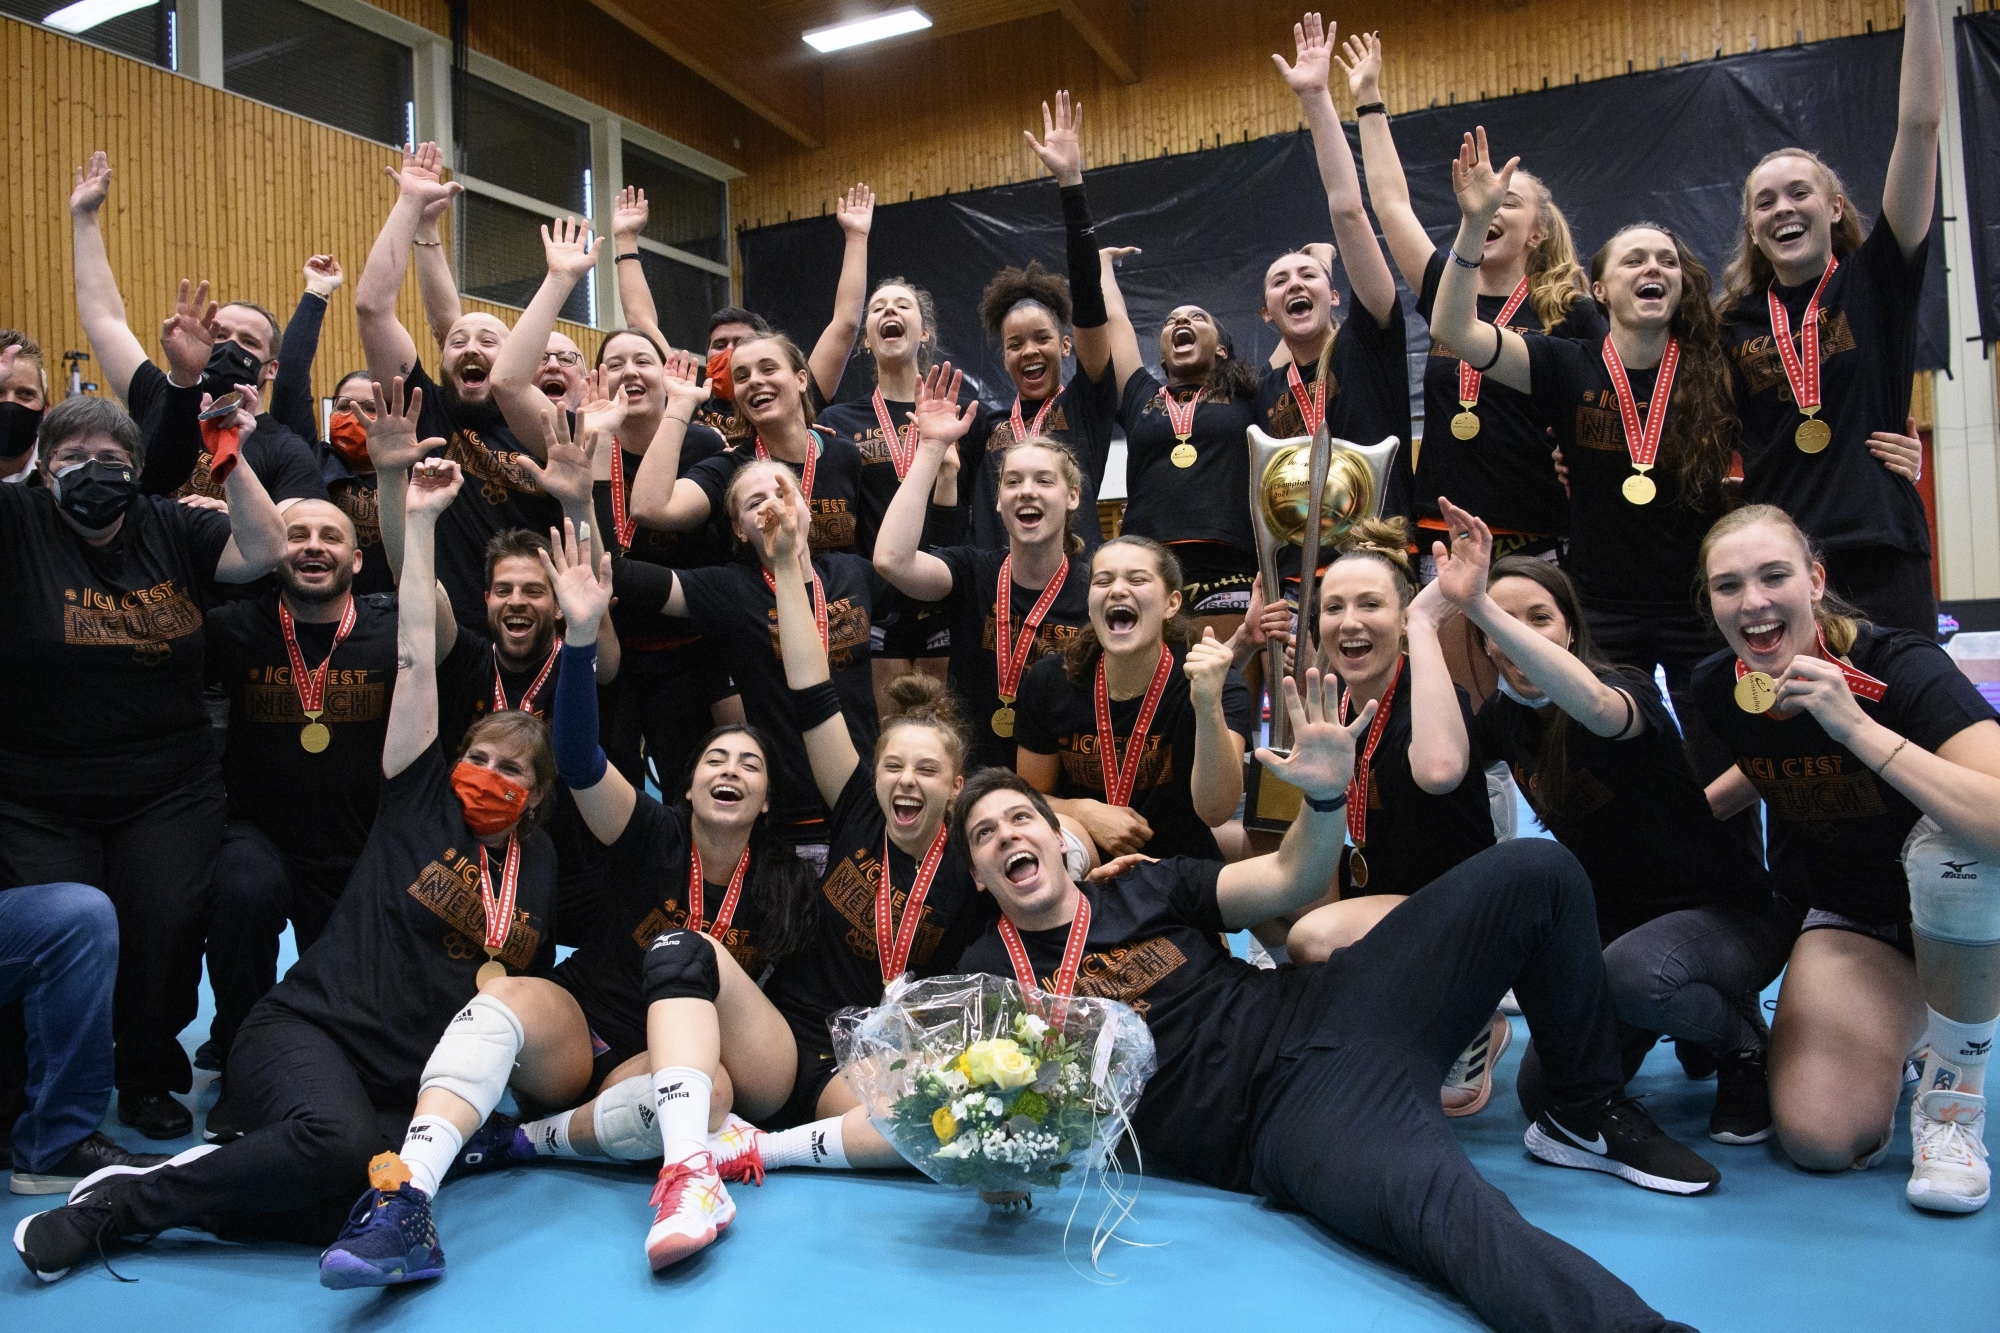 "ICI, C'EST NEUCH!" Les joueuses du NUC entourent le trophée de championnes de Suisse.